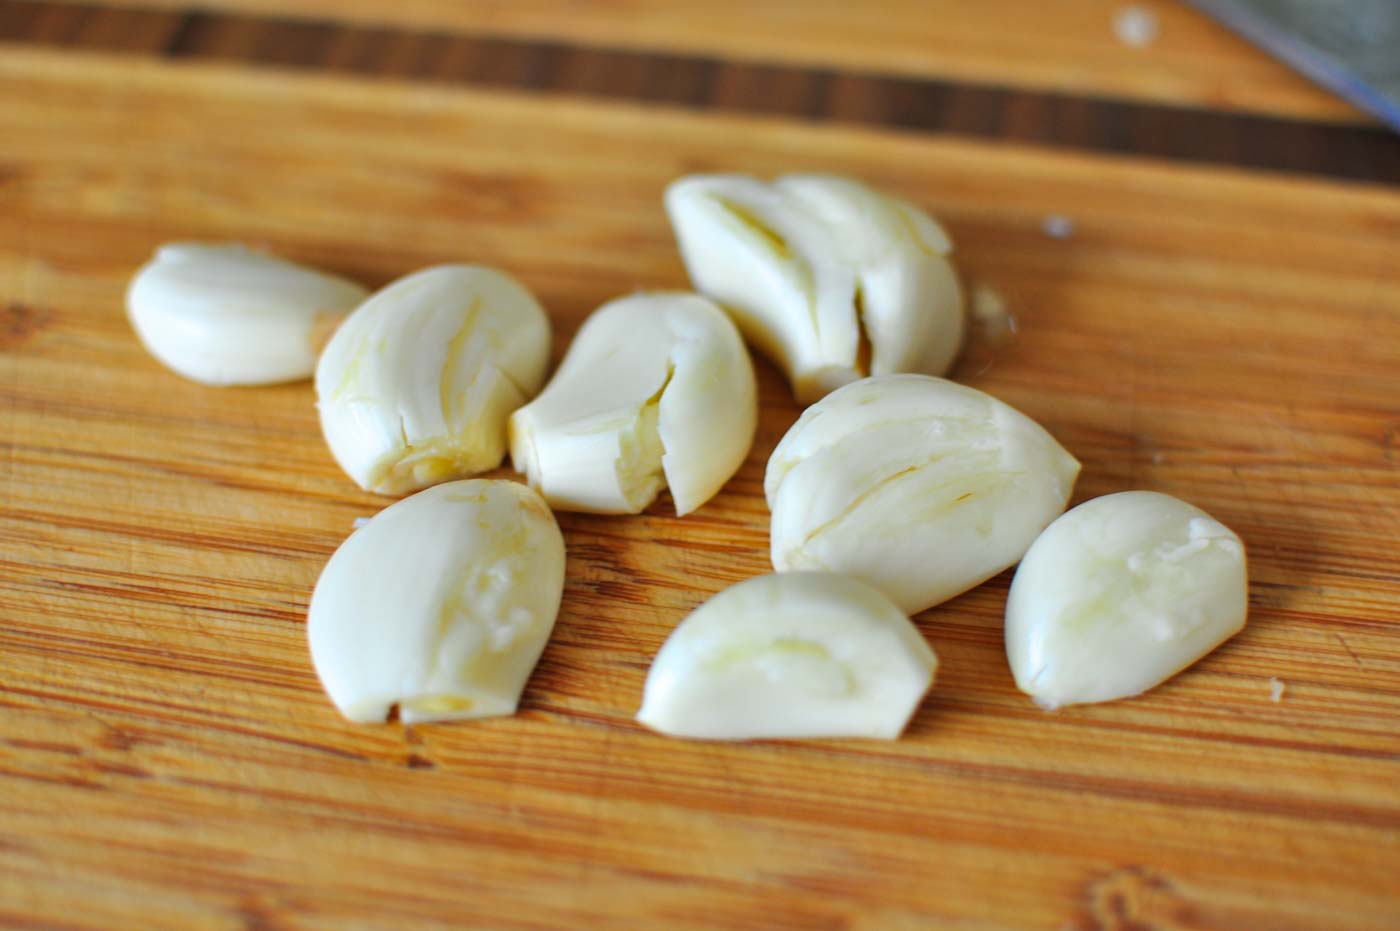 Smashed peeled garlic